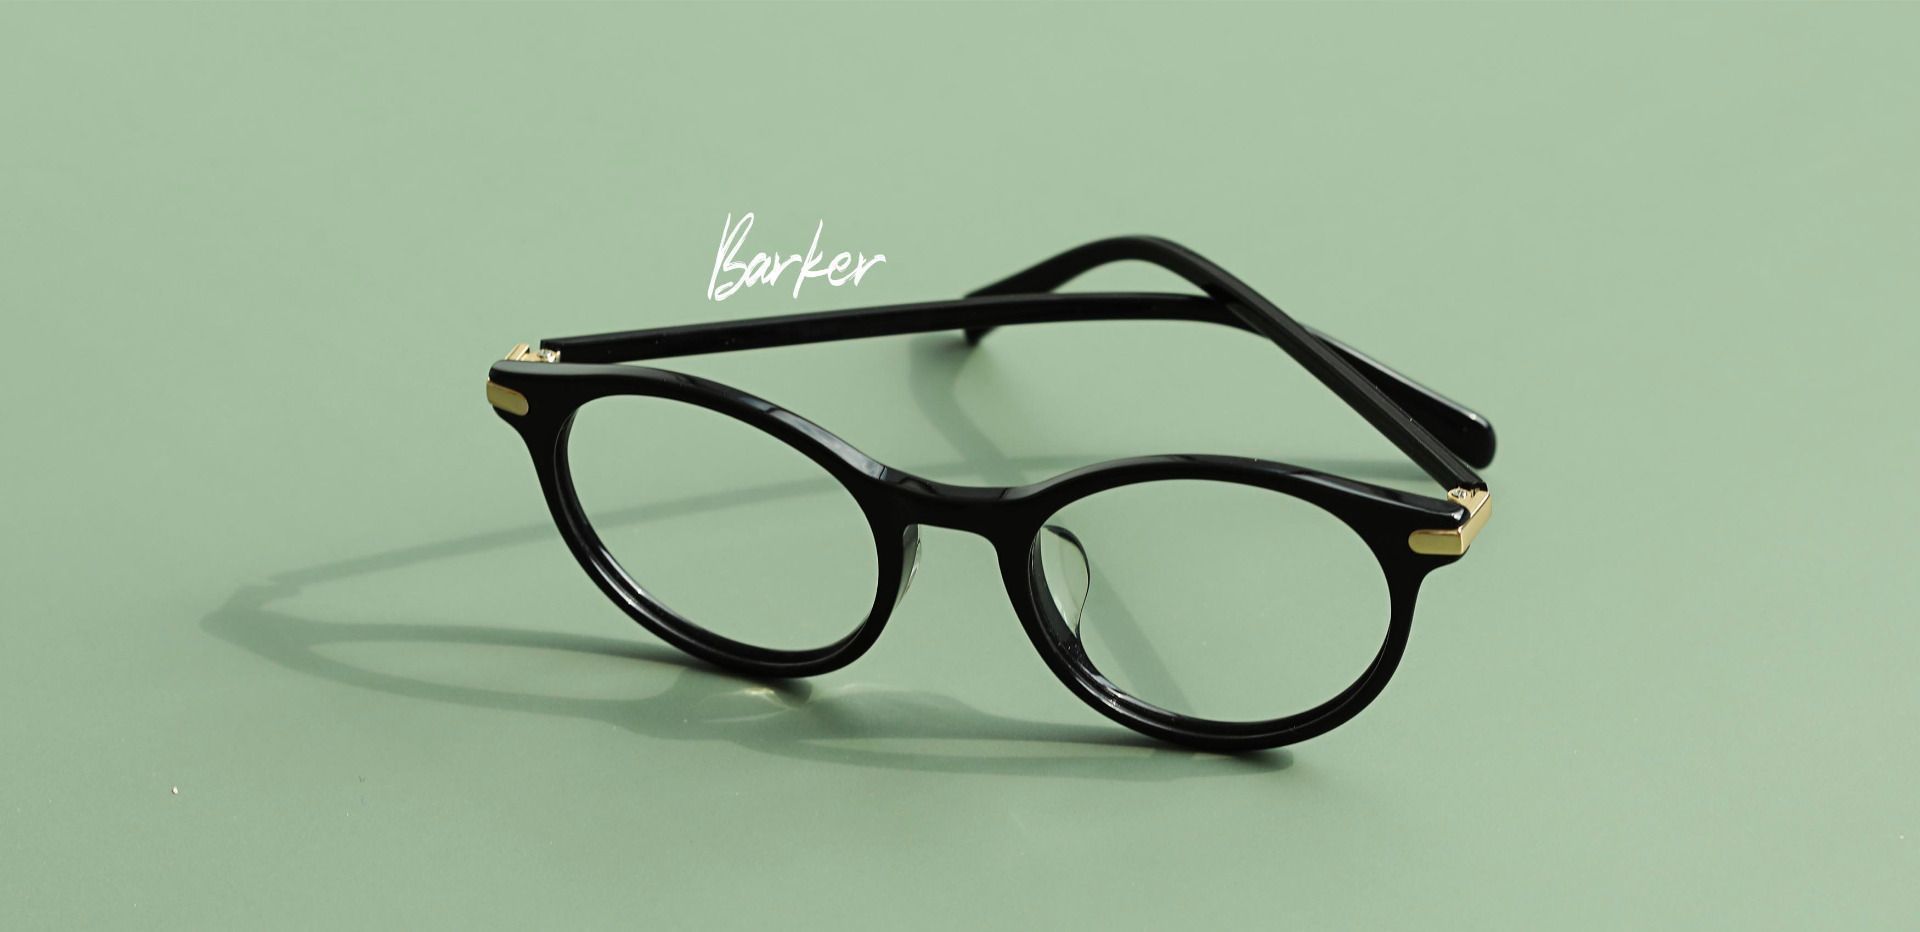 Barker Round Lined Bifocal Glasses - Black